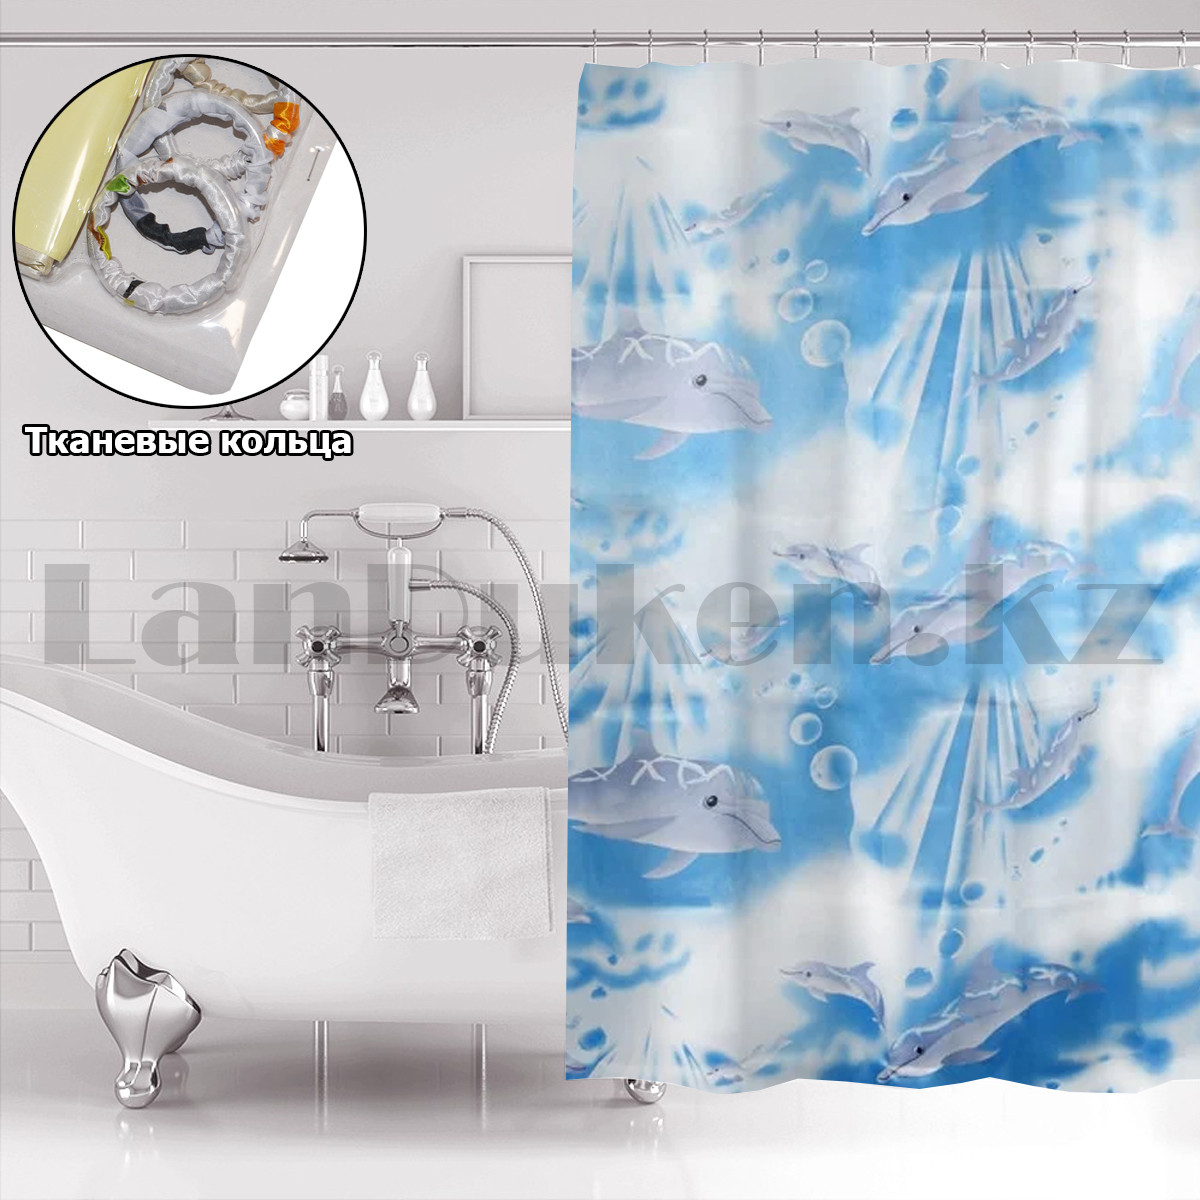 Водонепроницаемая тканевая шторка для ванной и душа 170х180 см с дельфинами голубая